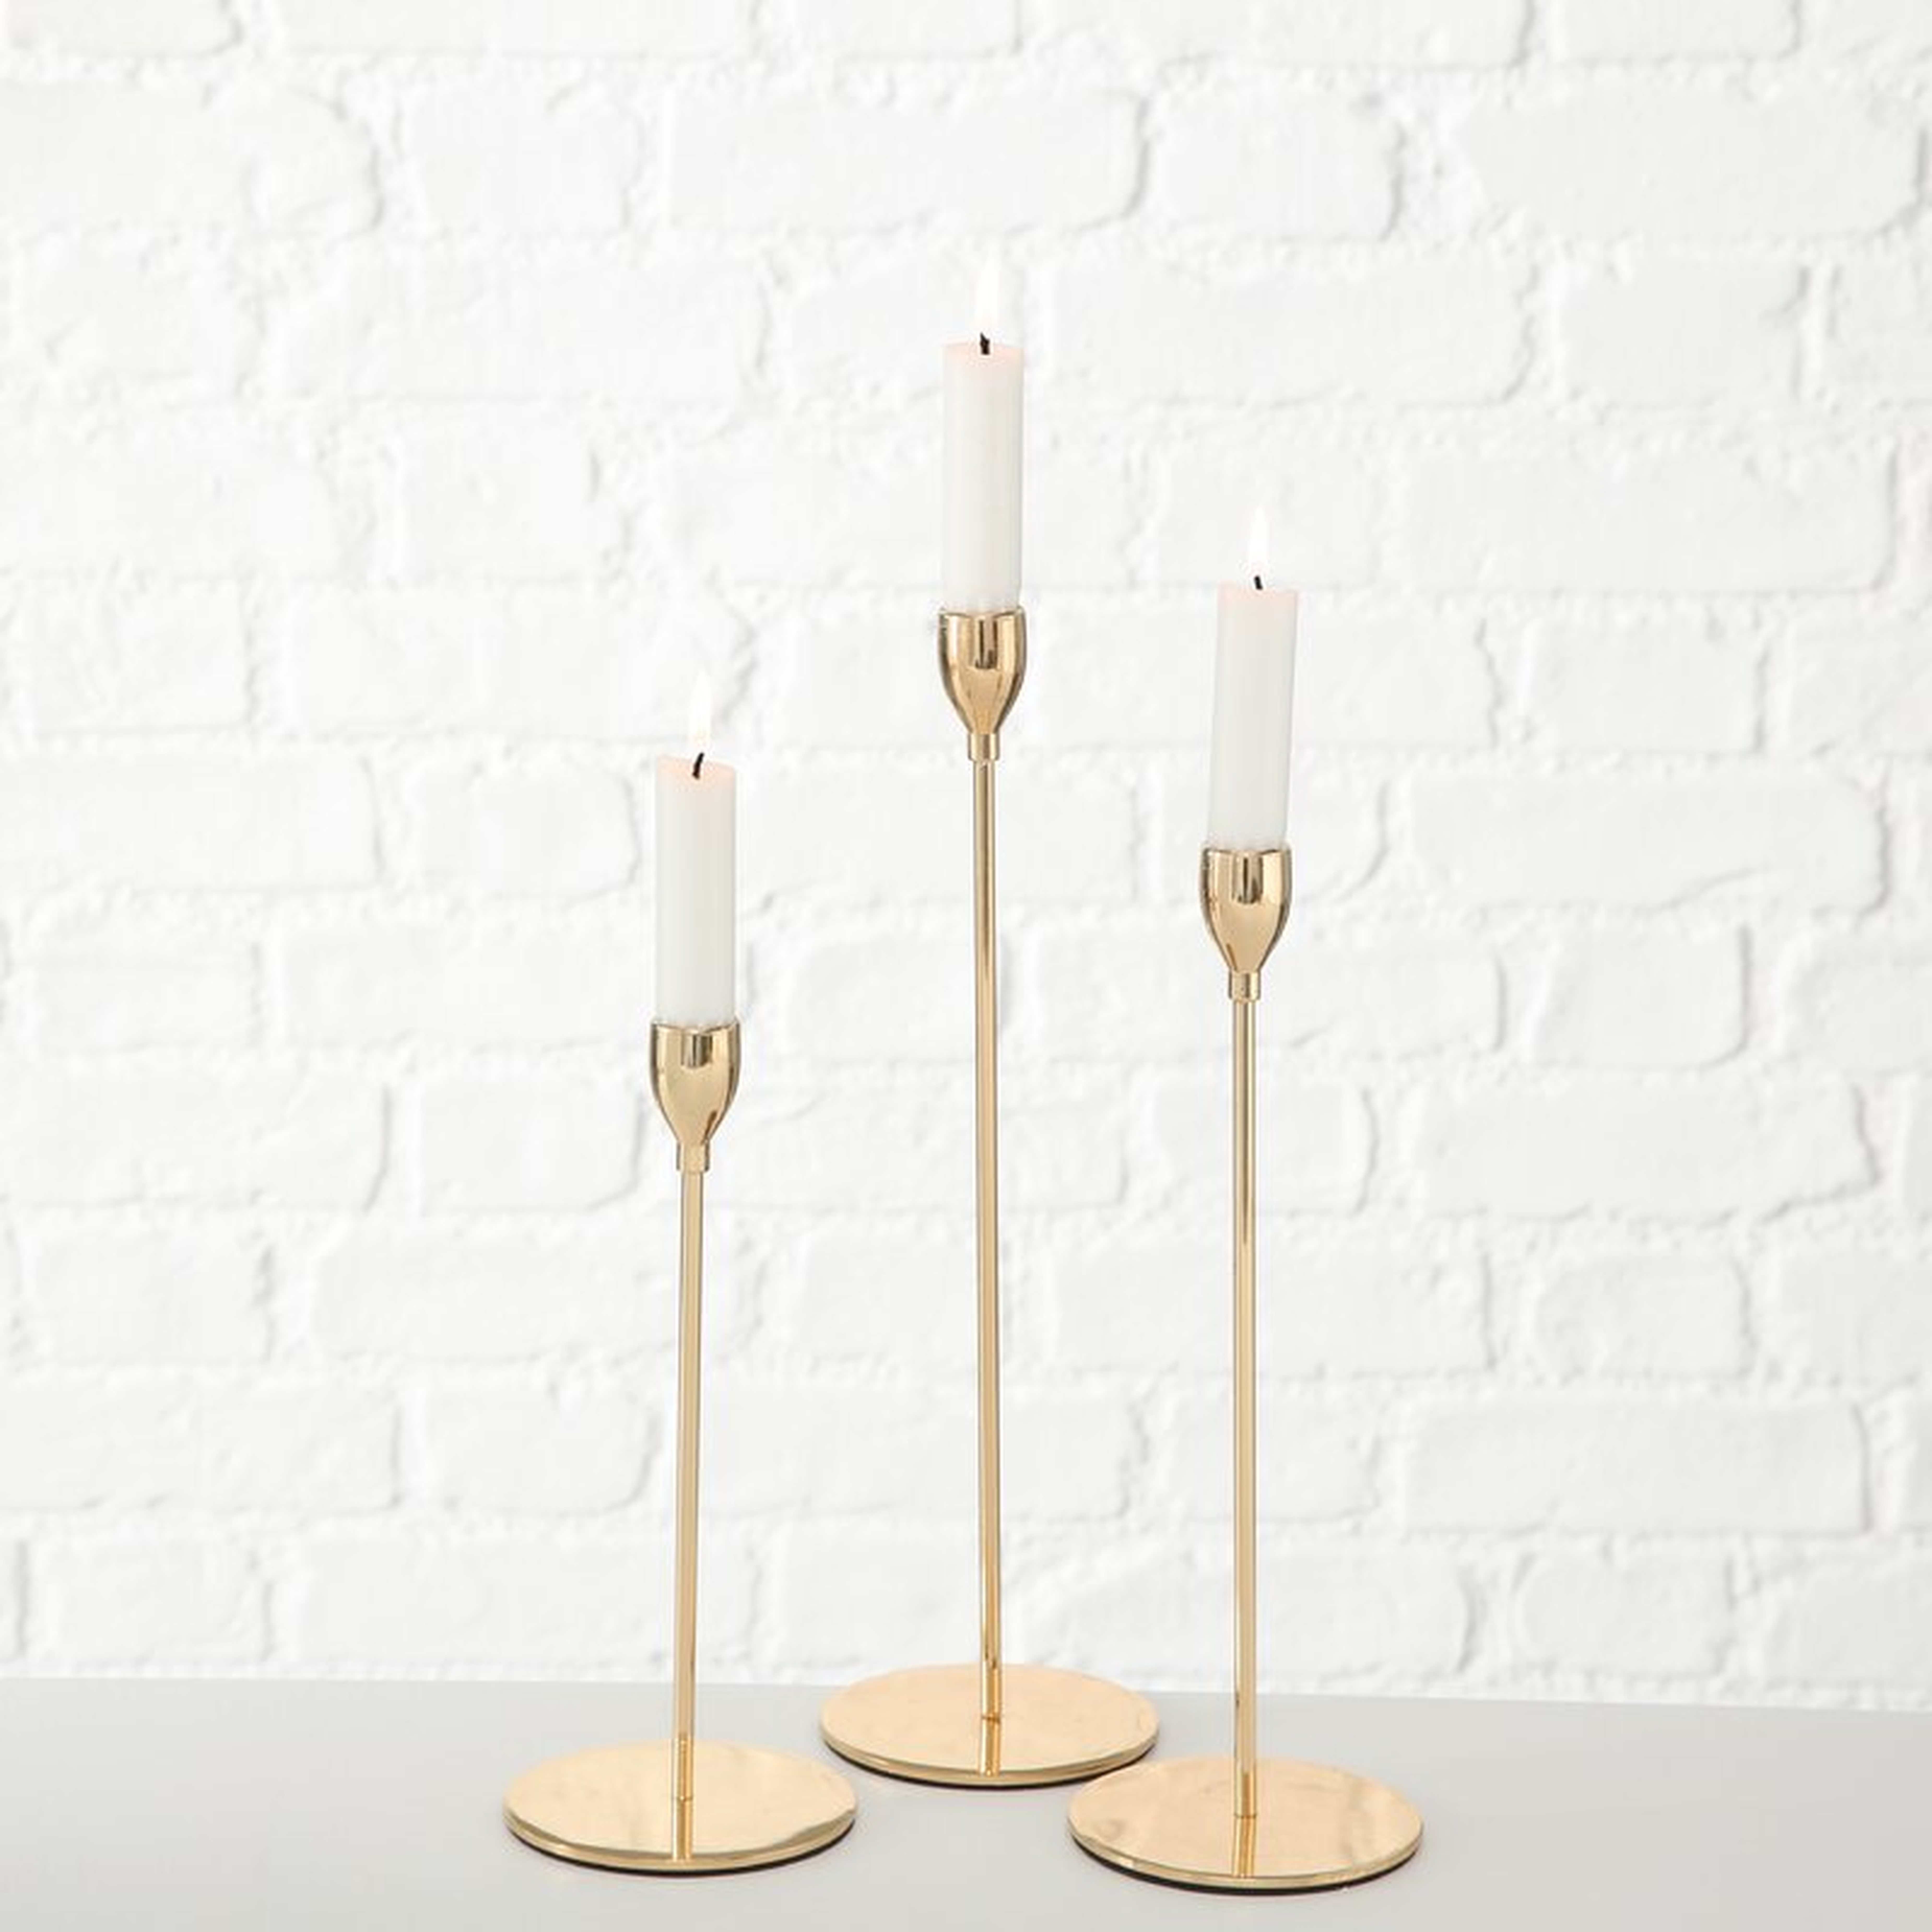 Tulip Top 3 Piece Metal Candlestick Set (Set of 3) - Wayfair